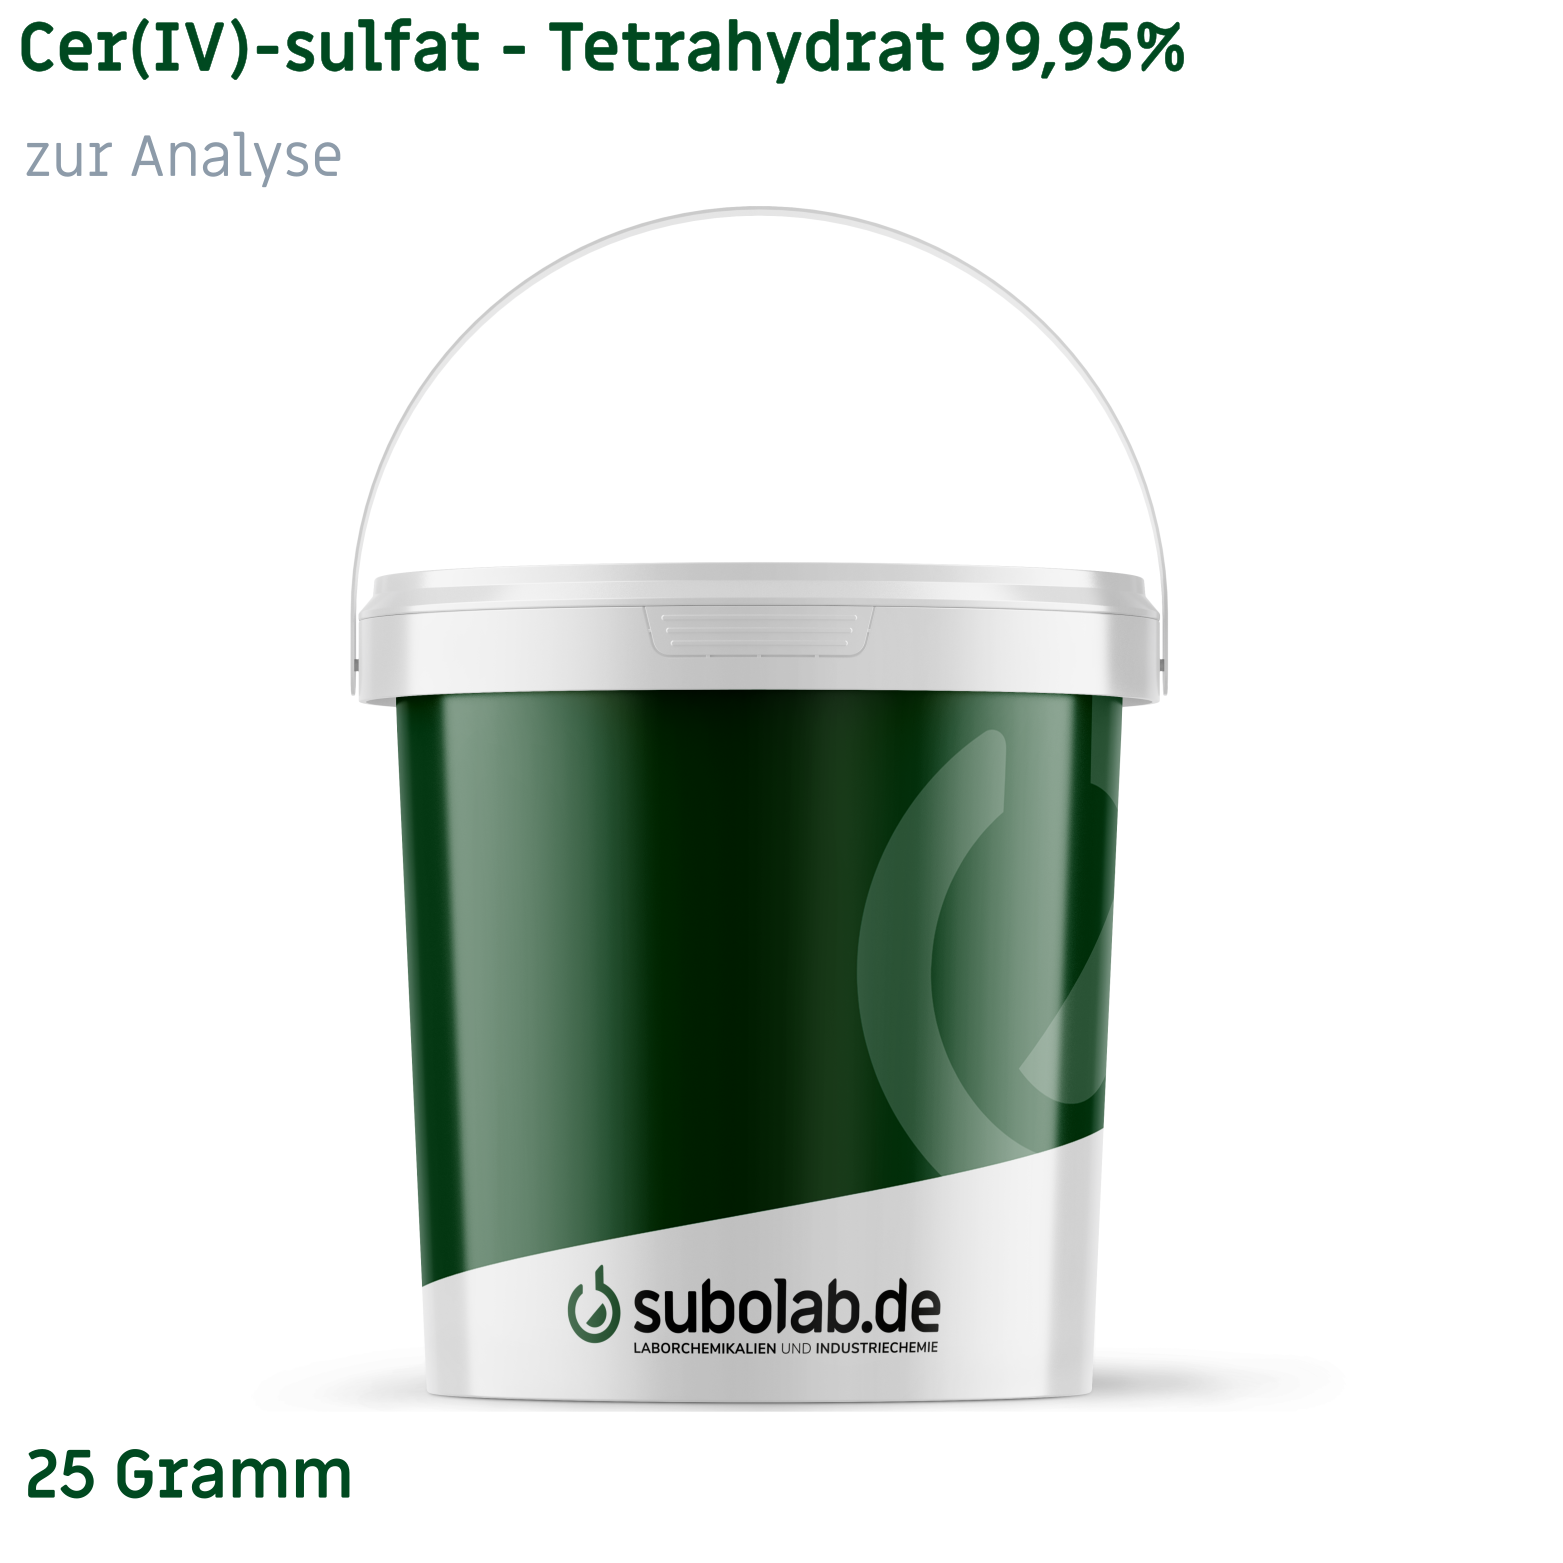 Bild von Cer(IV)-sulfat - Tetrahydrat 99,95% zur Analyse (25 Gramm)